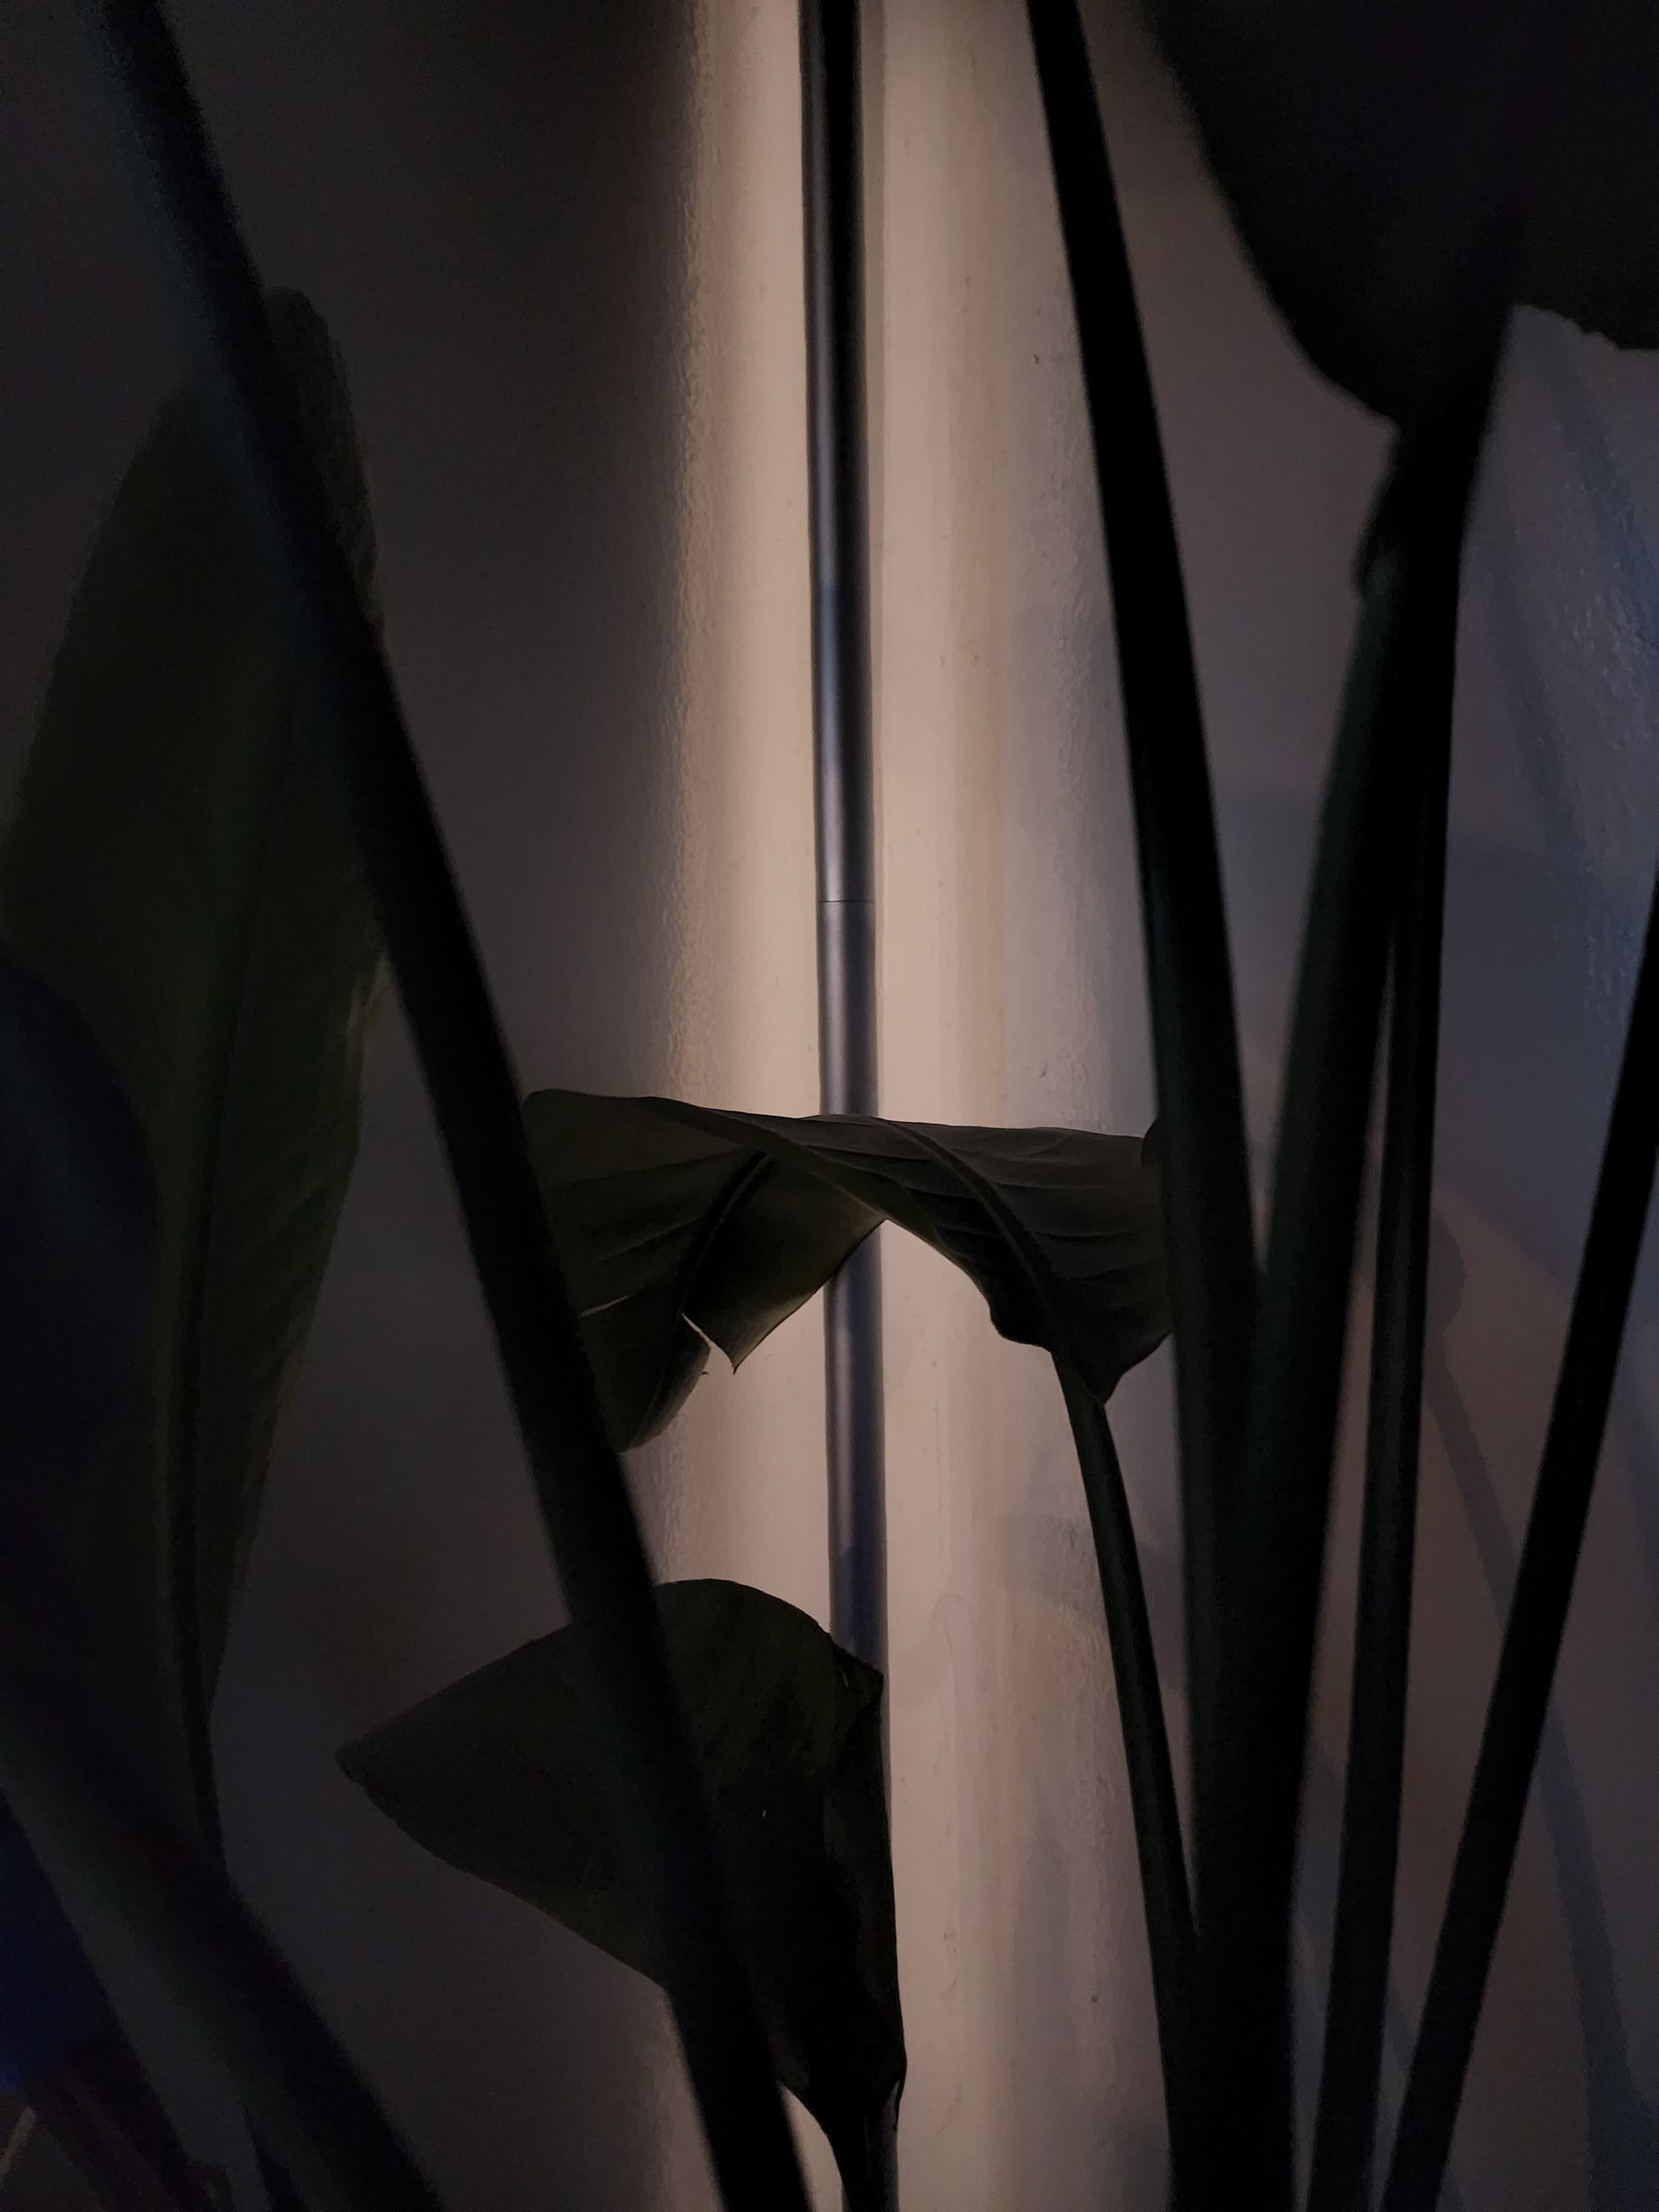 Uma cena escura de uma planta de casa filmada sem binning de pixel.